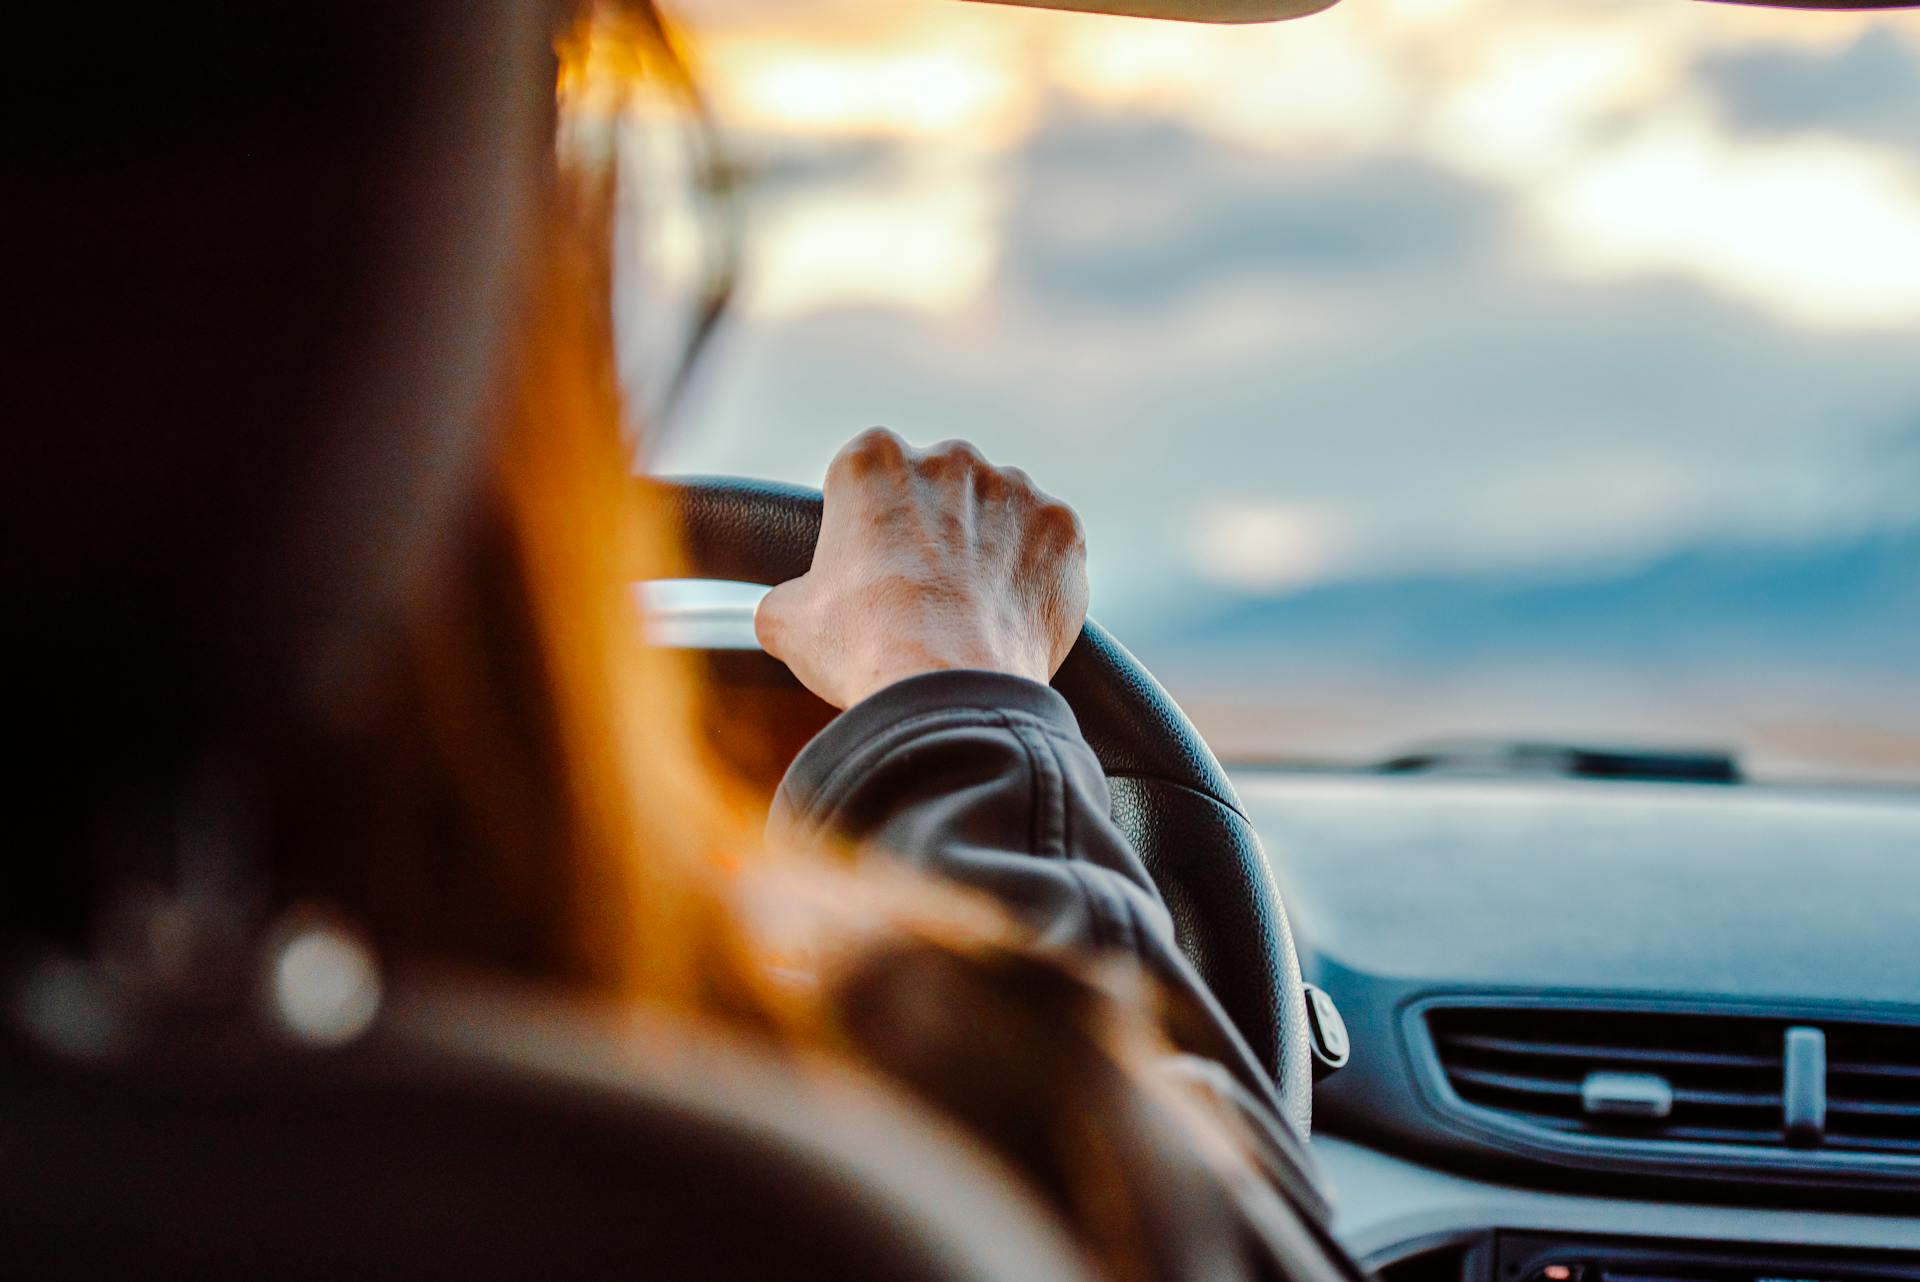 A woman driving a car | Source: Pexels